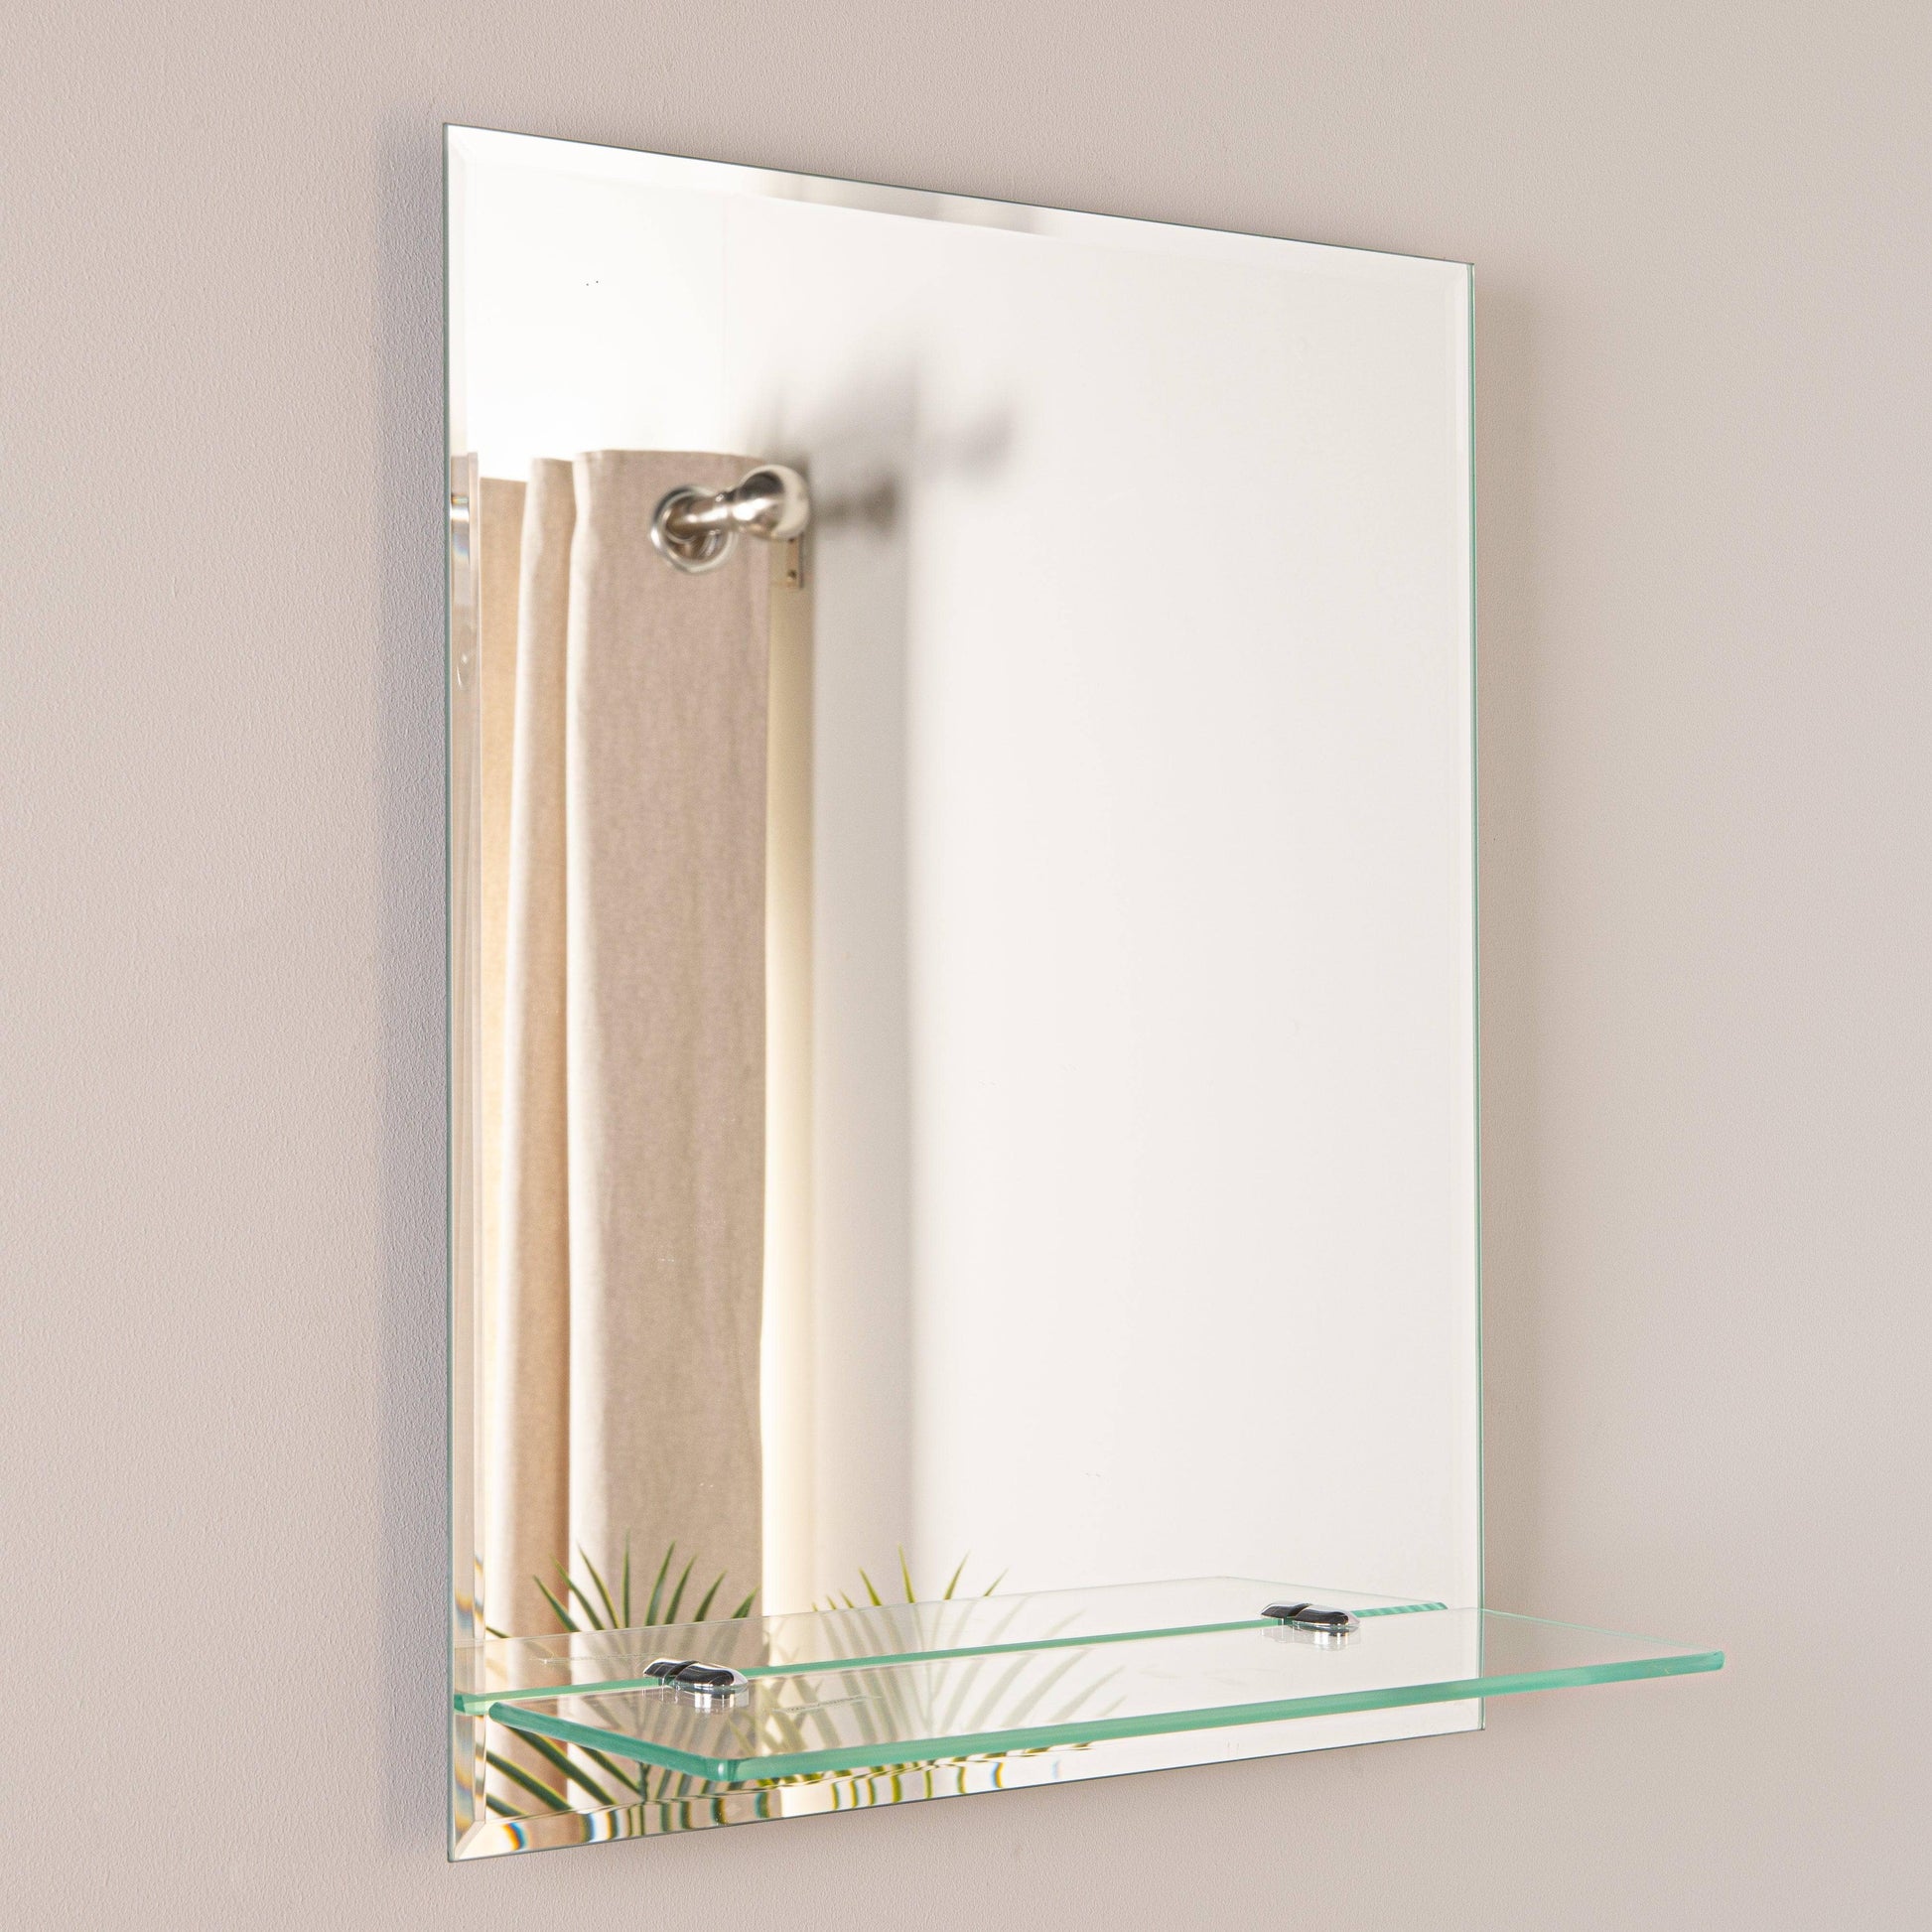 Mirrors  -  Euro Mirror Shelf Rectangle 50 x 40cm  -  50155664